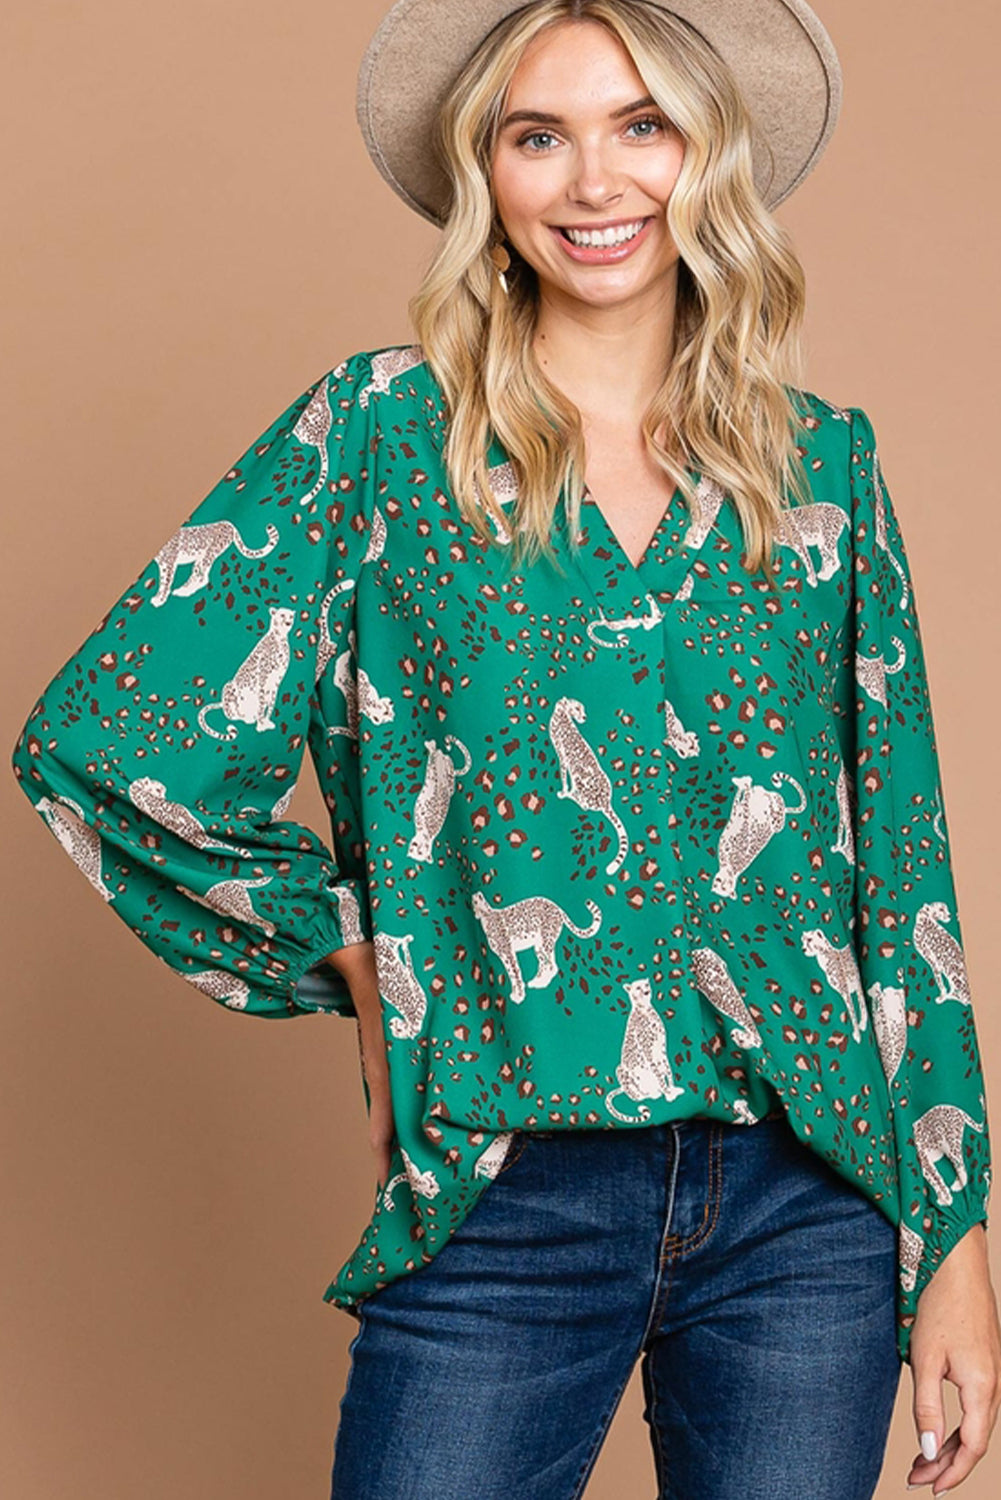 Grüne, fließende Bluse mit Gepardenmuster und V-Ausschnitt